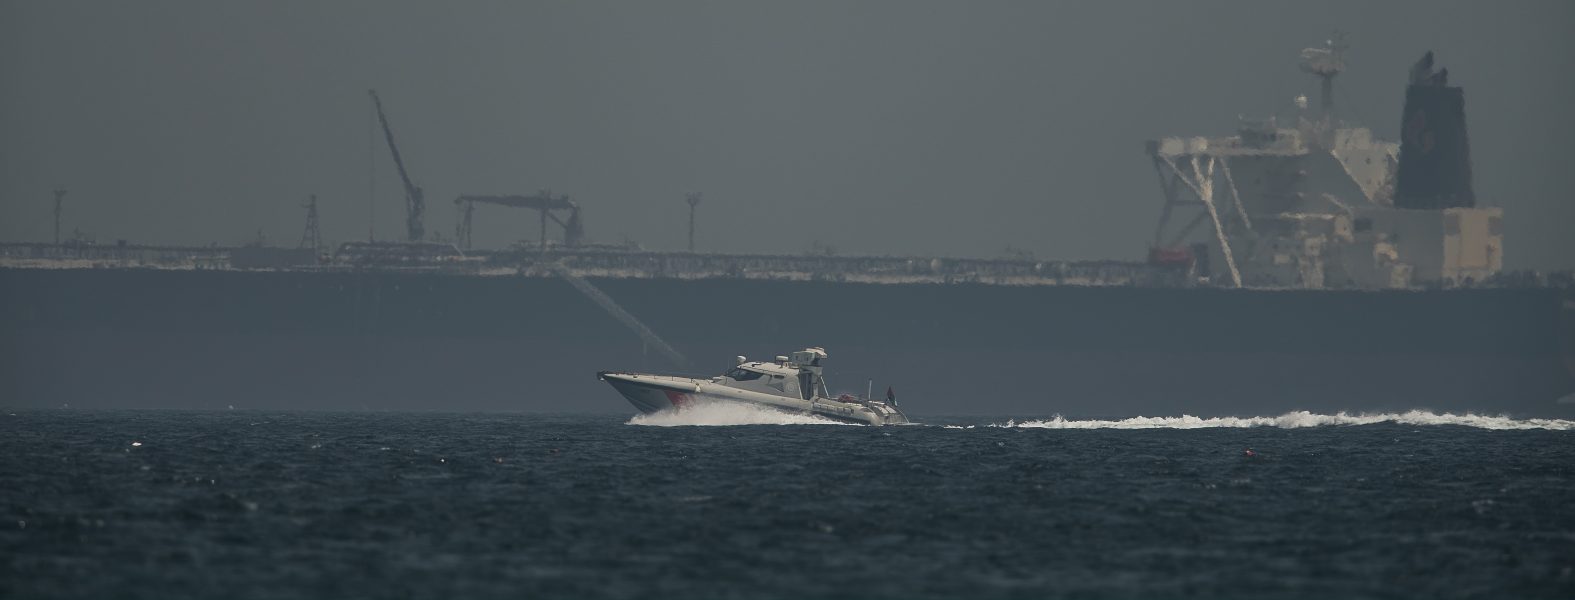 Kustbevakningen kör förbi en oljetanker utanför Fujairahs kust i Förenade arabemiraten i samband med sabotaget den 13 maj i år.